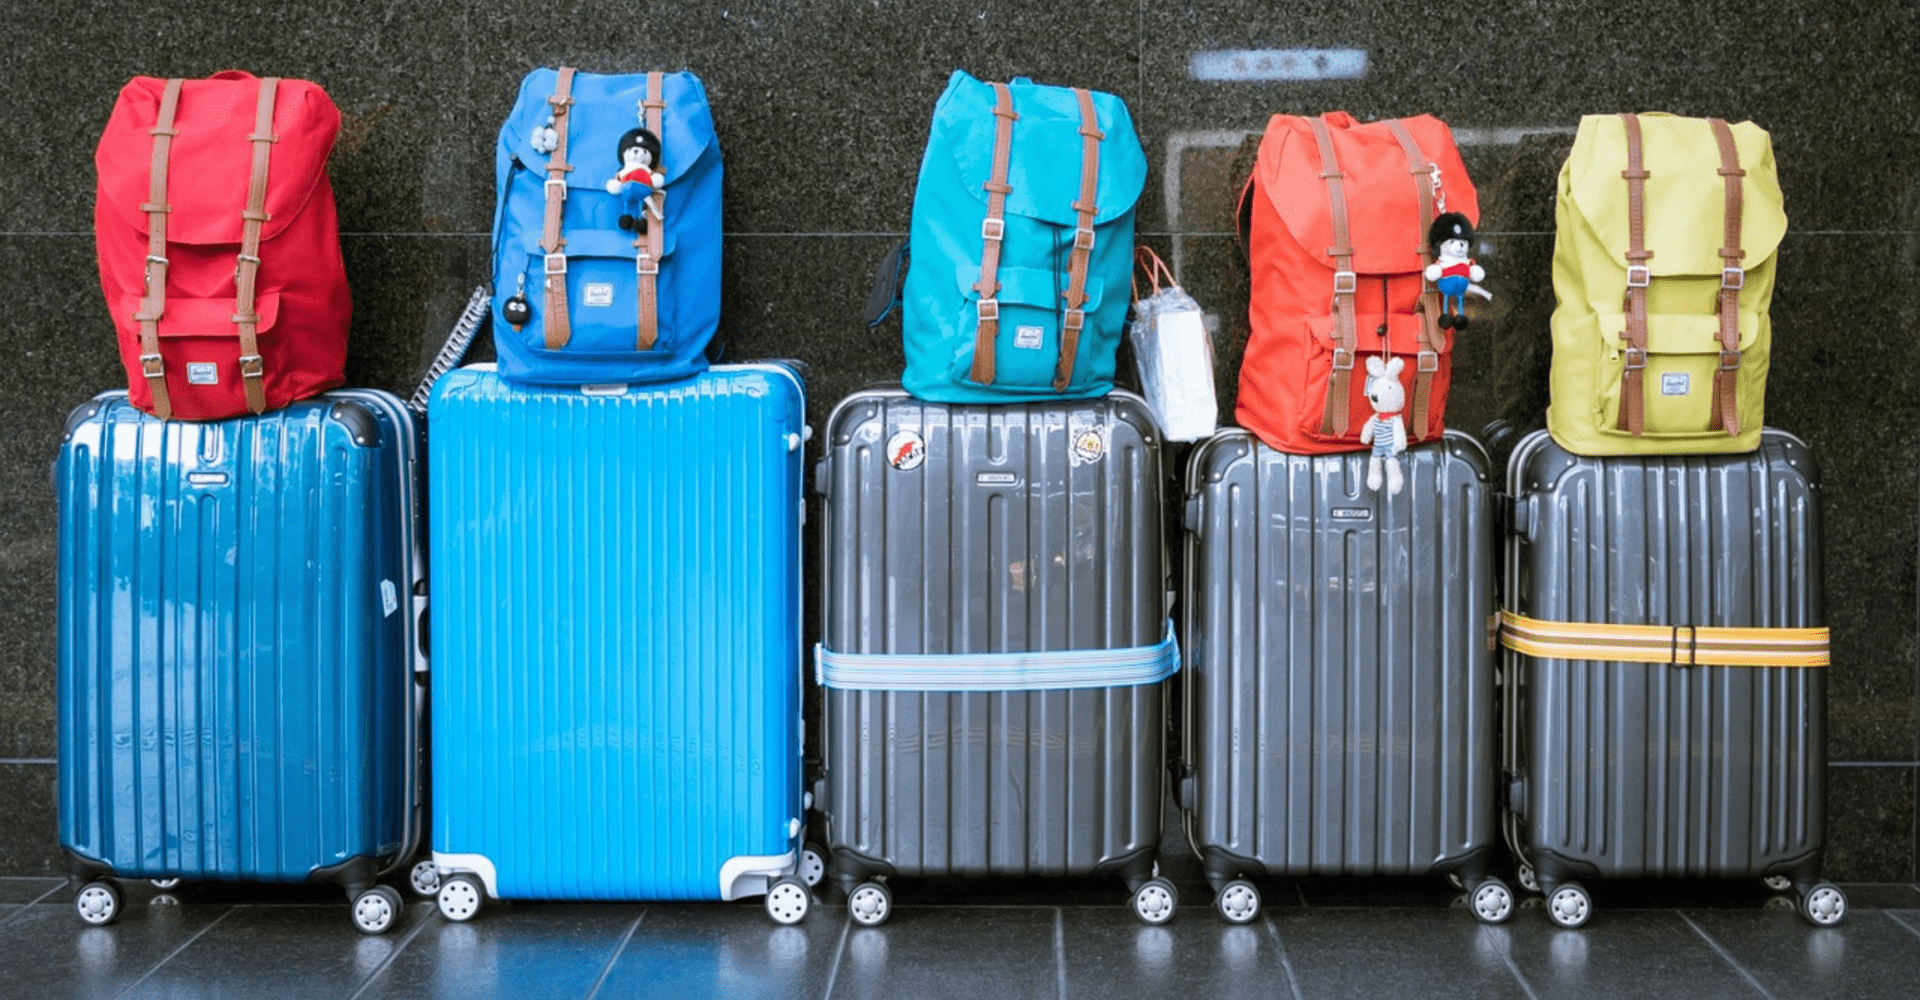 5 dużych walizek, na których położono pięć plecaków w różnych kolorach (czerwonym, niebieskim, turkusowym, pomarańczowym i żółtym)